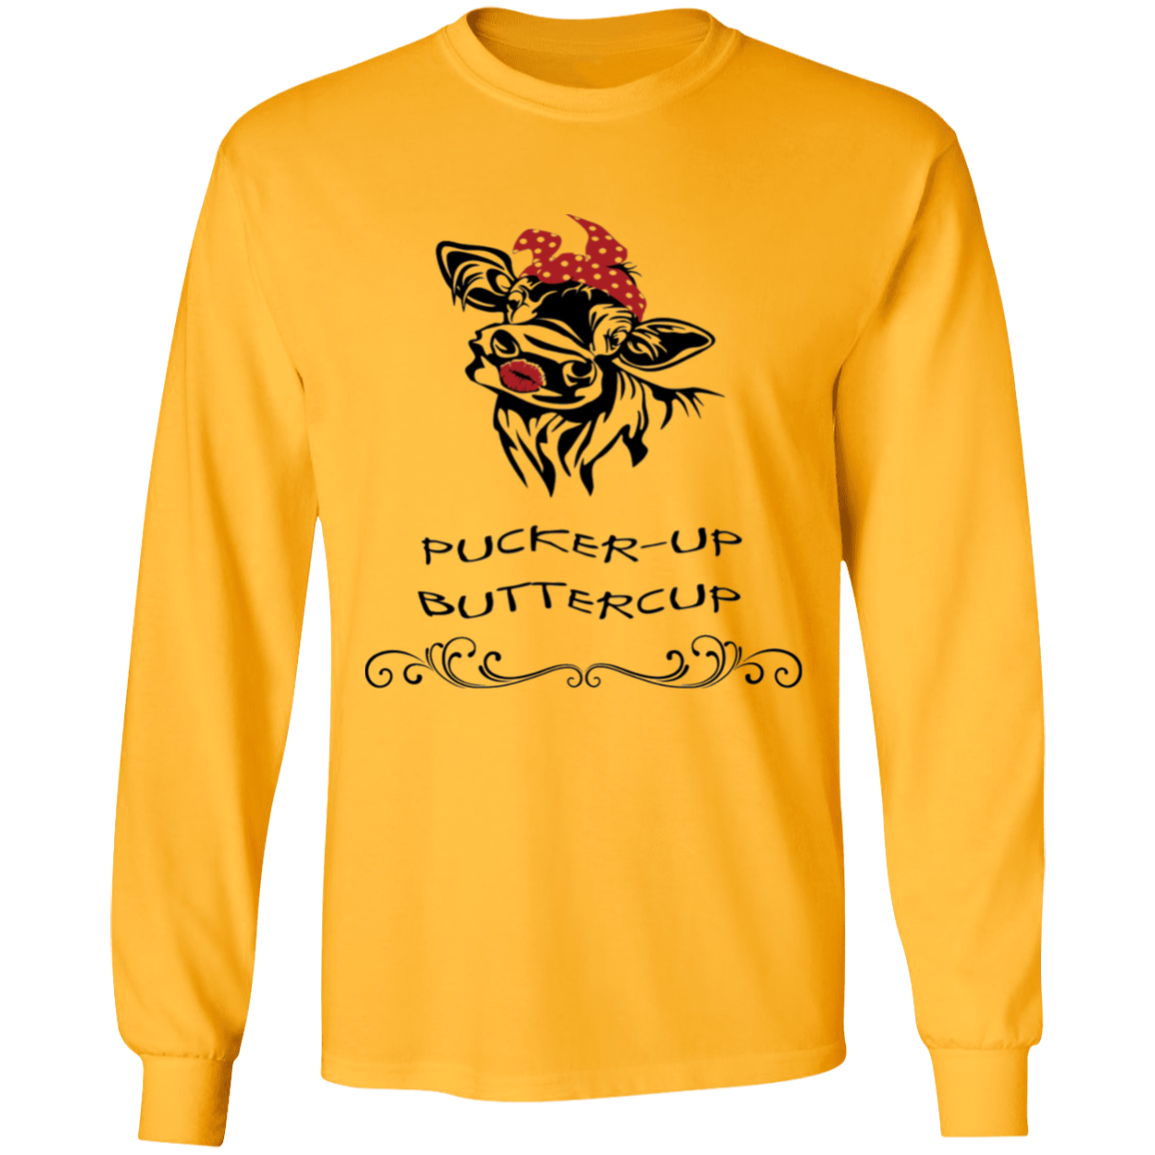 Pucker-up buttercup long sleeve t'shirt